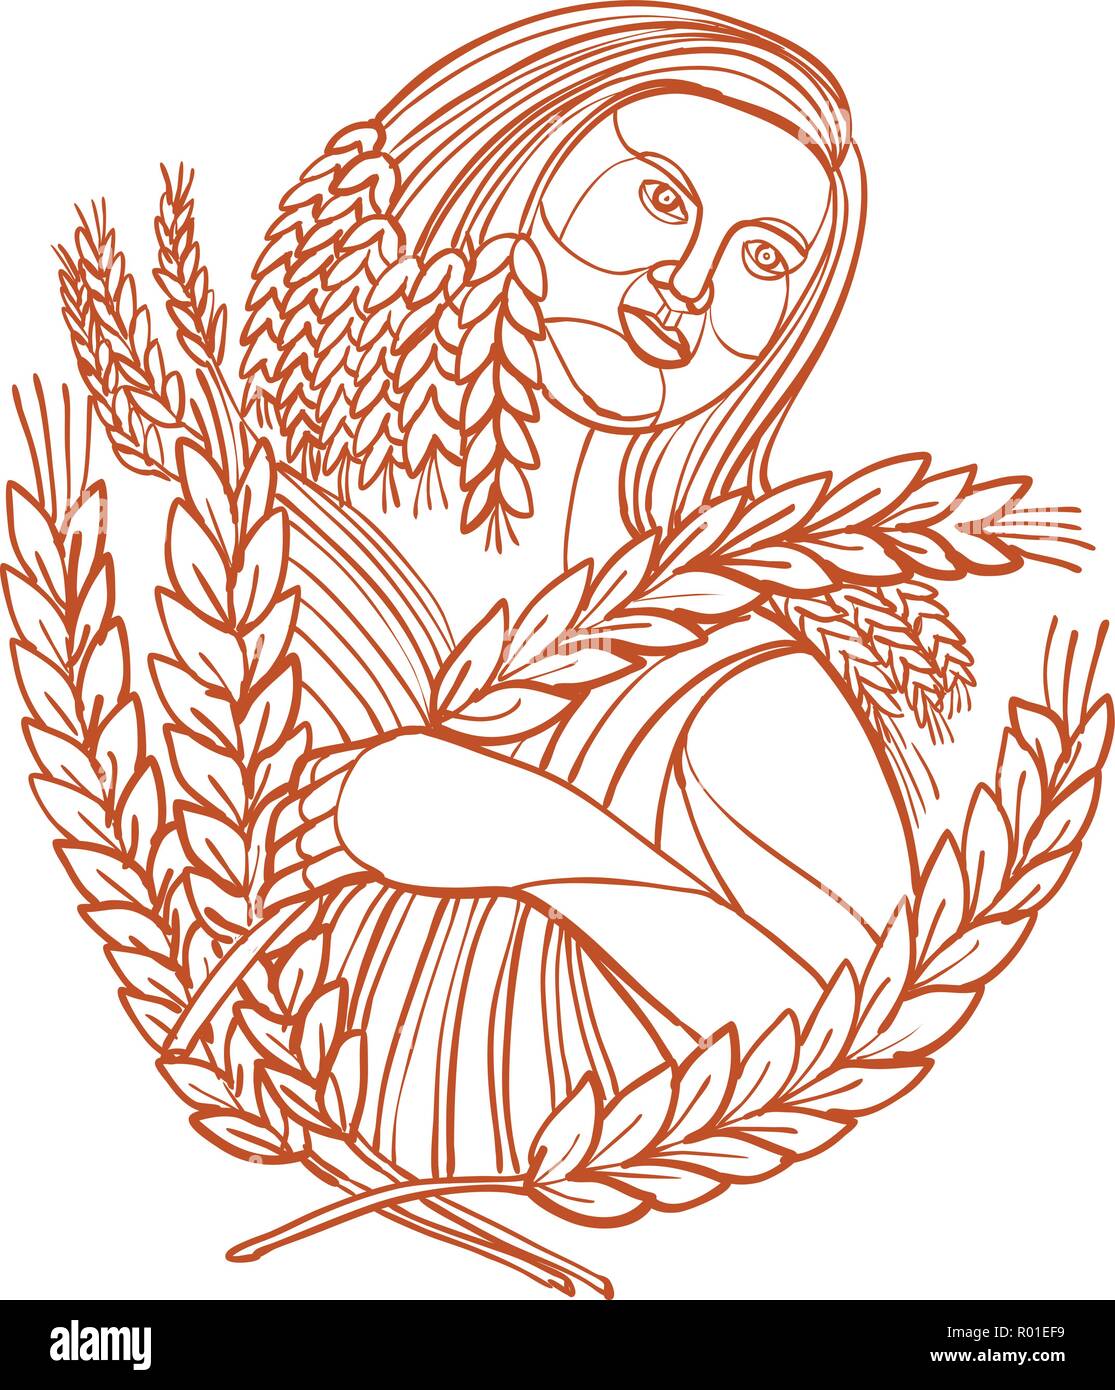 Mono line Abbildung: Frau Bauer oder Demeter, der Göttin der Ernte und leitet Körner und die Fruchtbarkeit der Erde, mit Stiel Stock Vektor